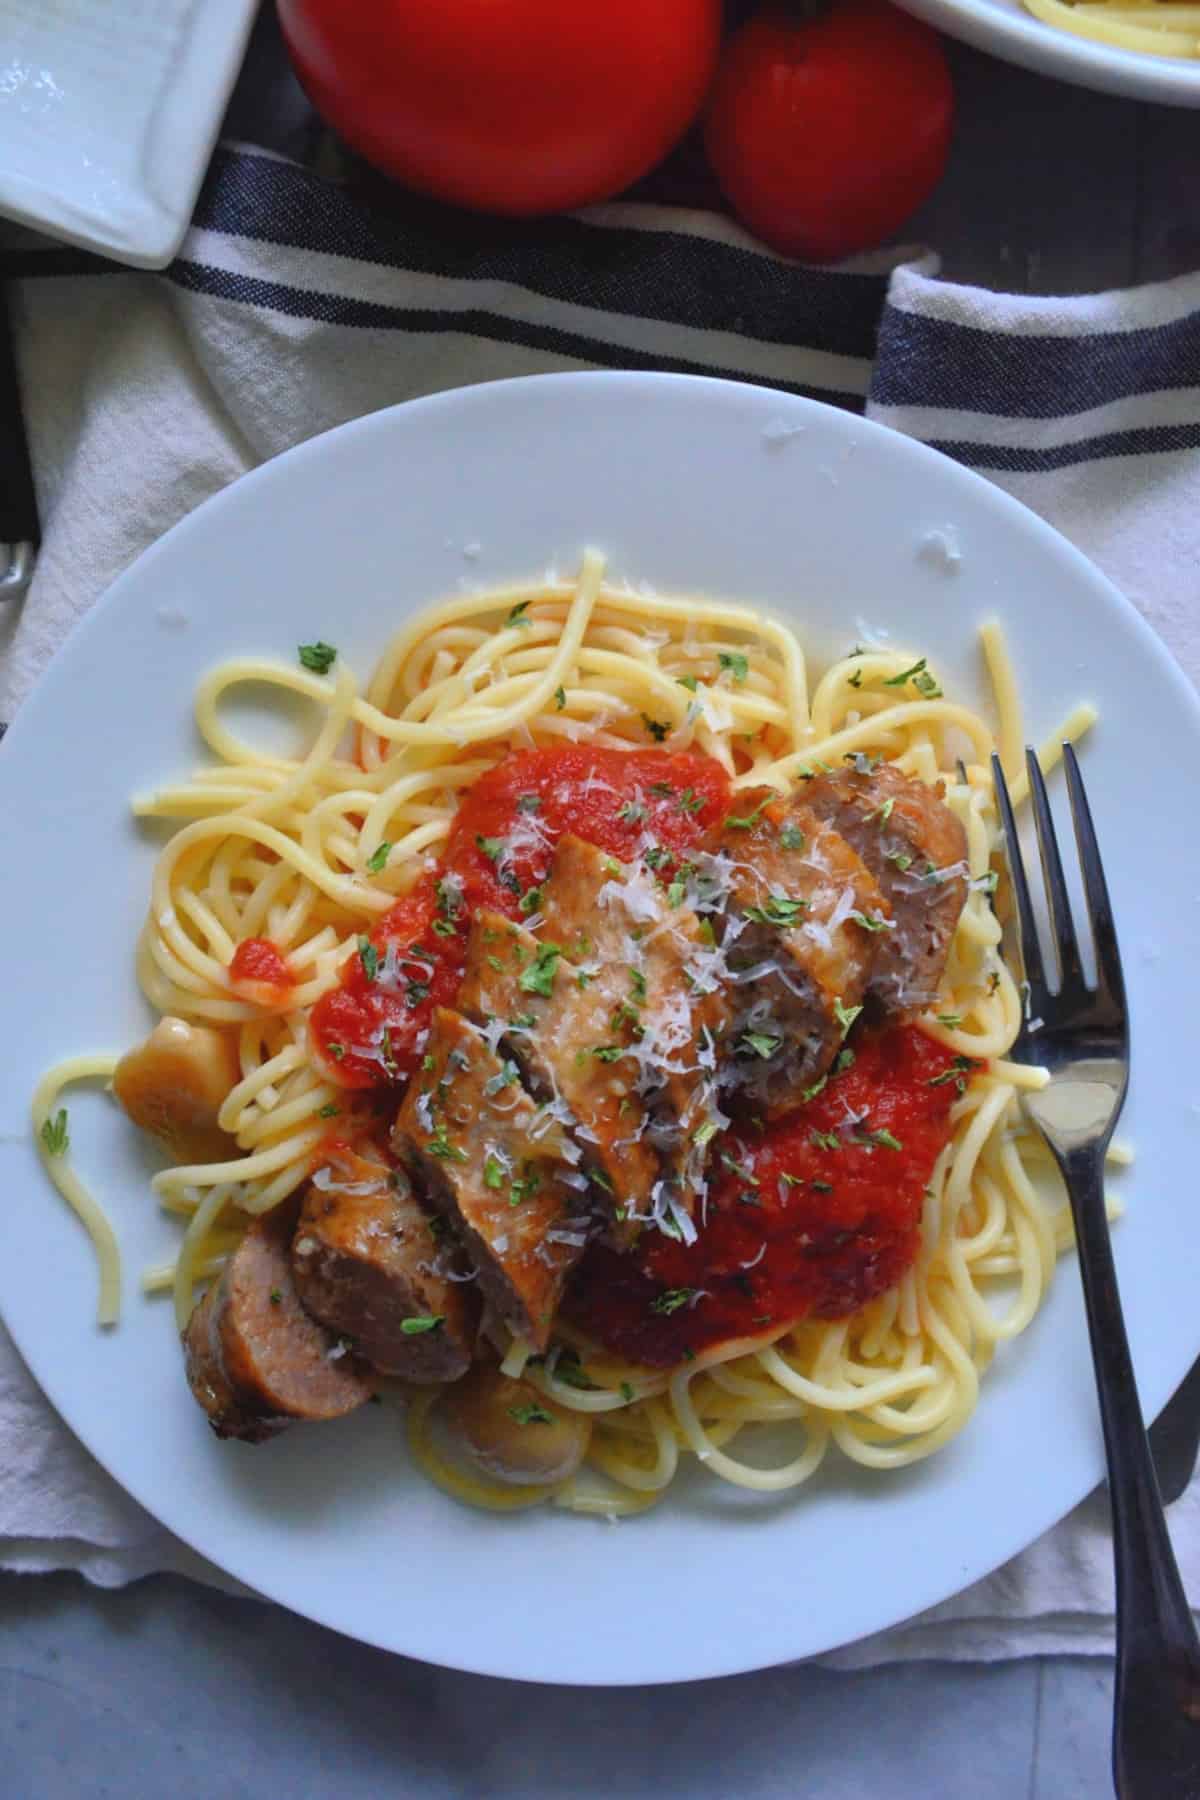  widok z góry z bliska platerowane spaghetti z marinarą, ziołami, pokrojoną włoską kiełbasą i widelcem.